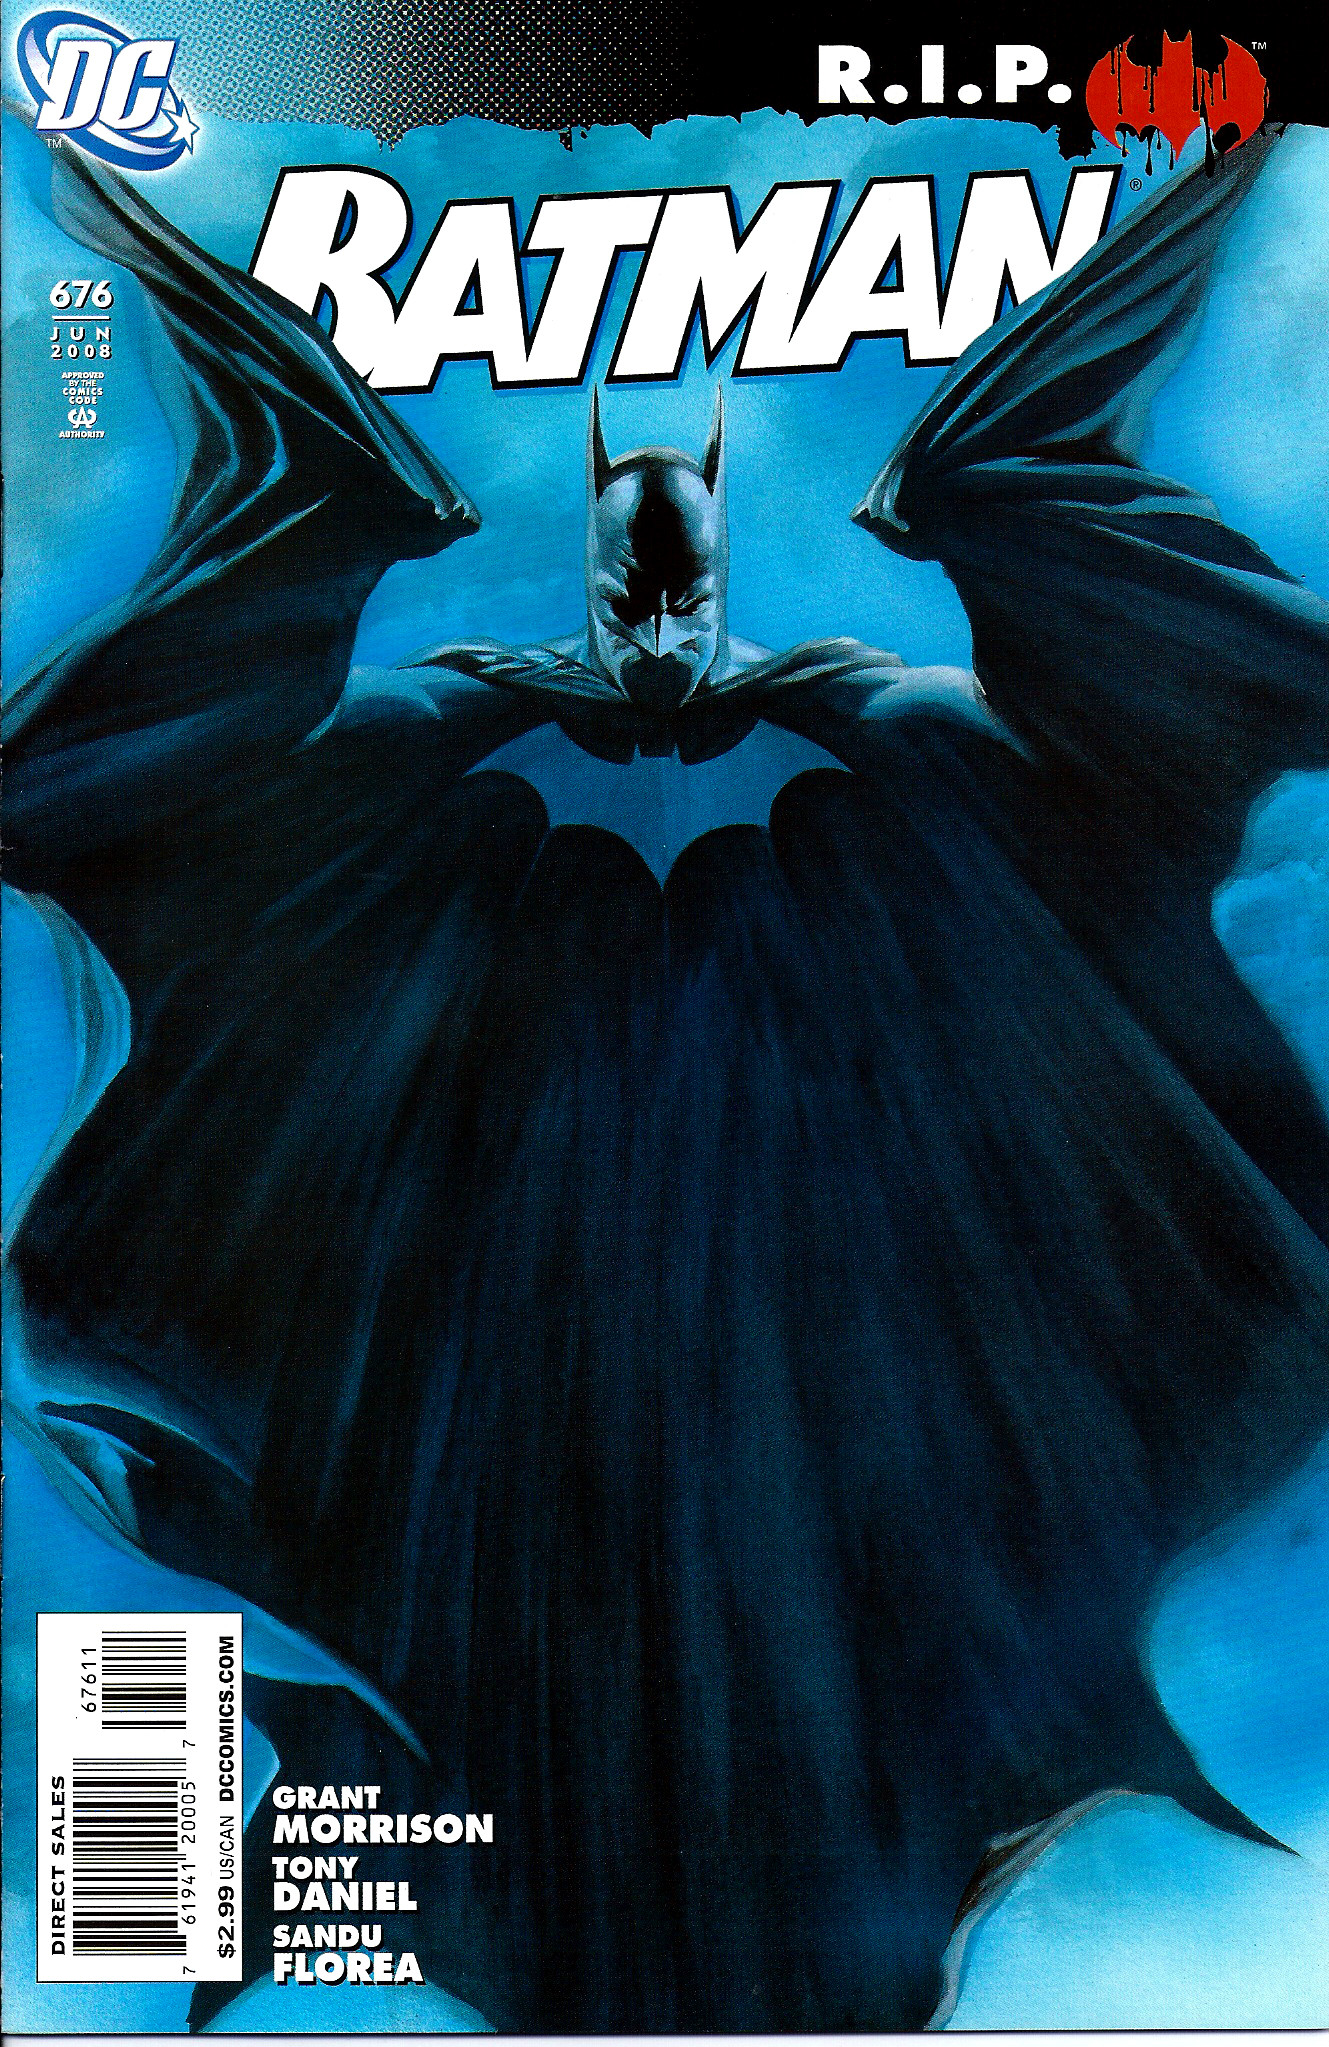 Batman (Vol. 1) #676 (2008) Cover